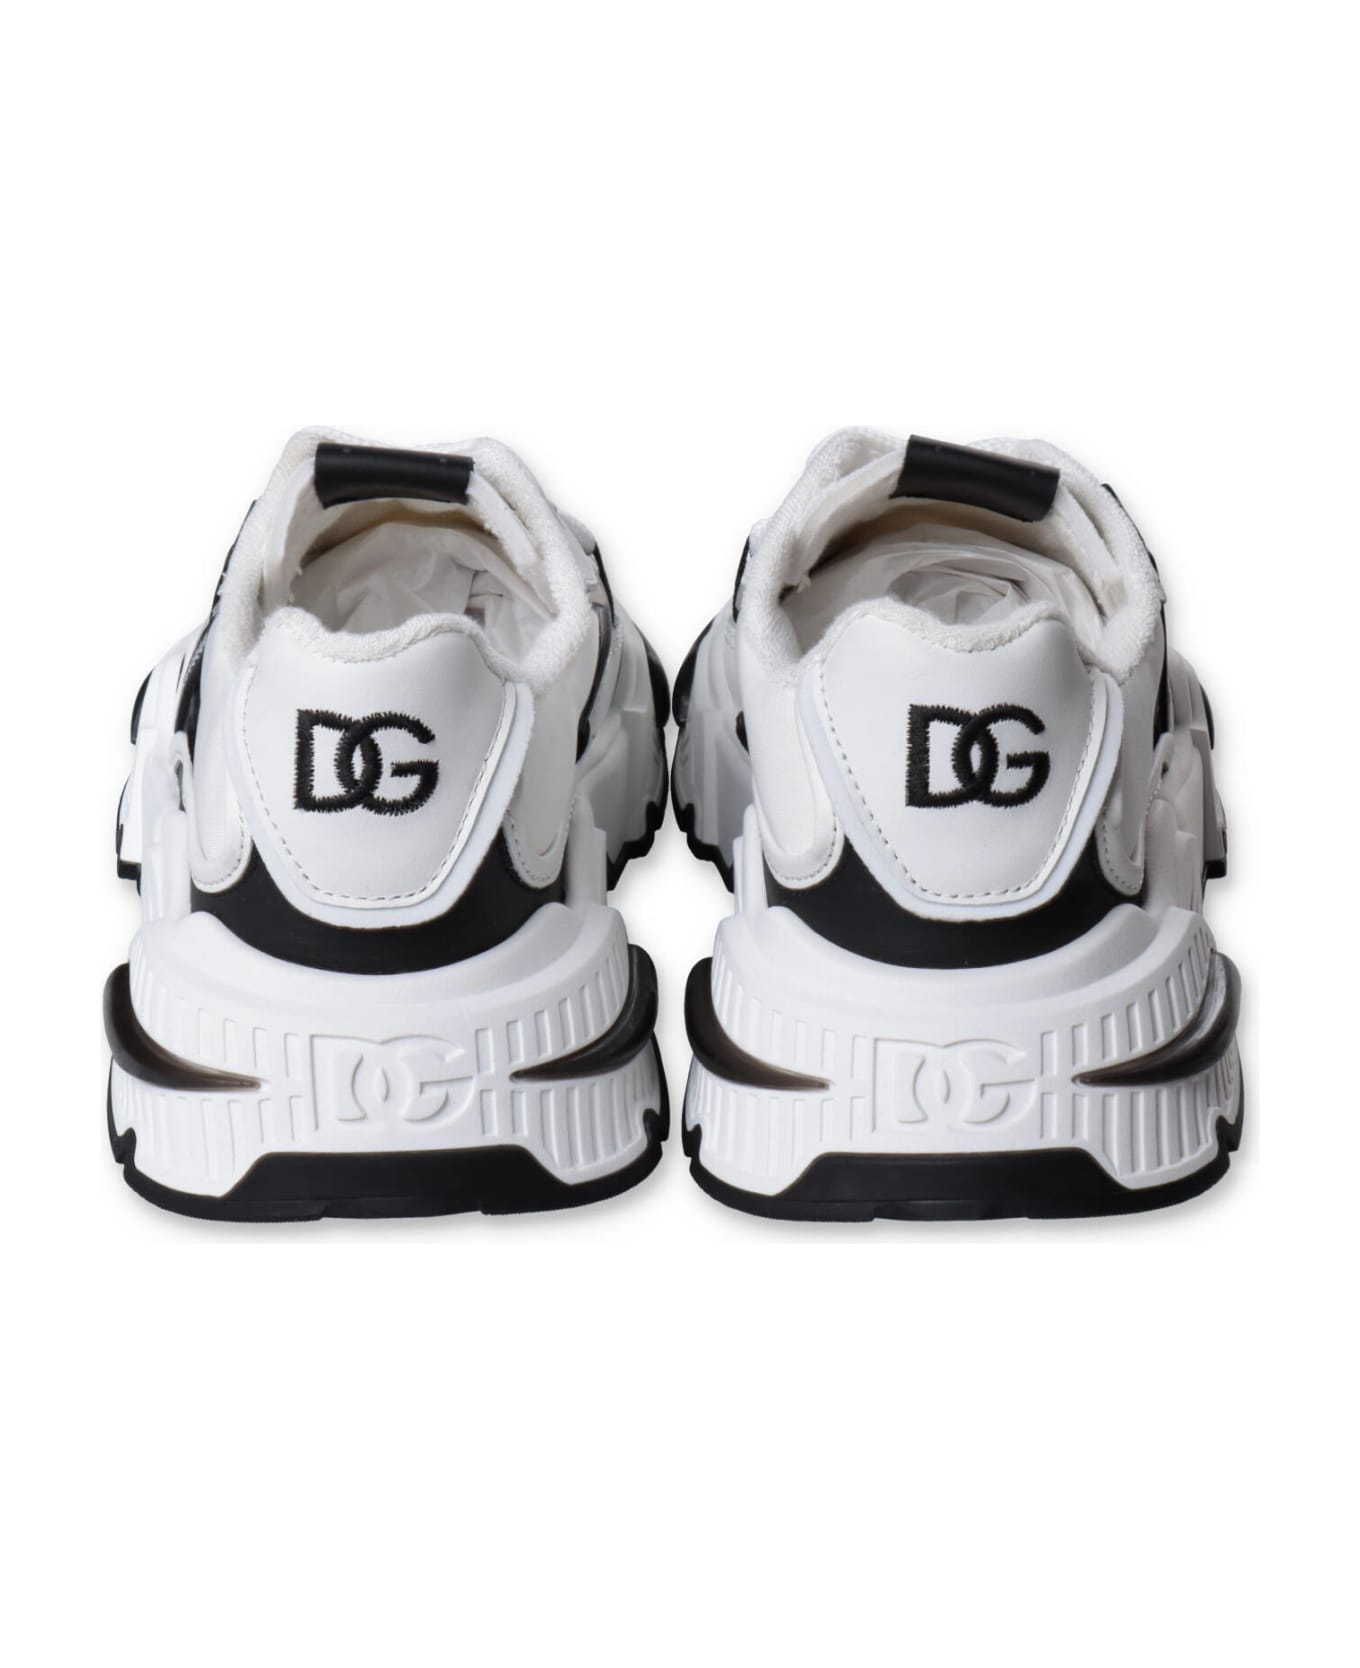 Dolce & Gabbana Sneakers Bianche E Nero In Vitello Con Inserti In Tnt Bambino - Bianco